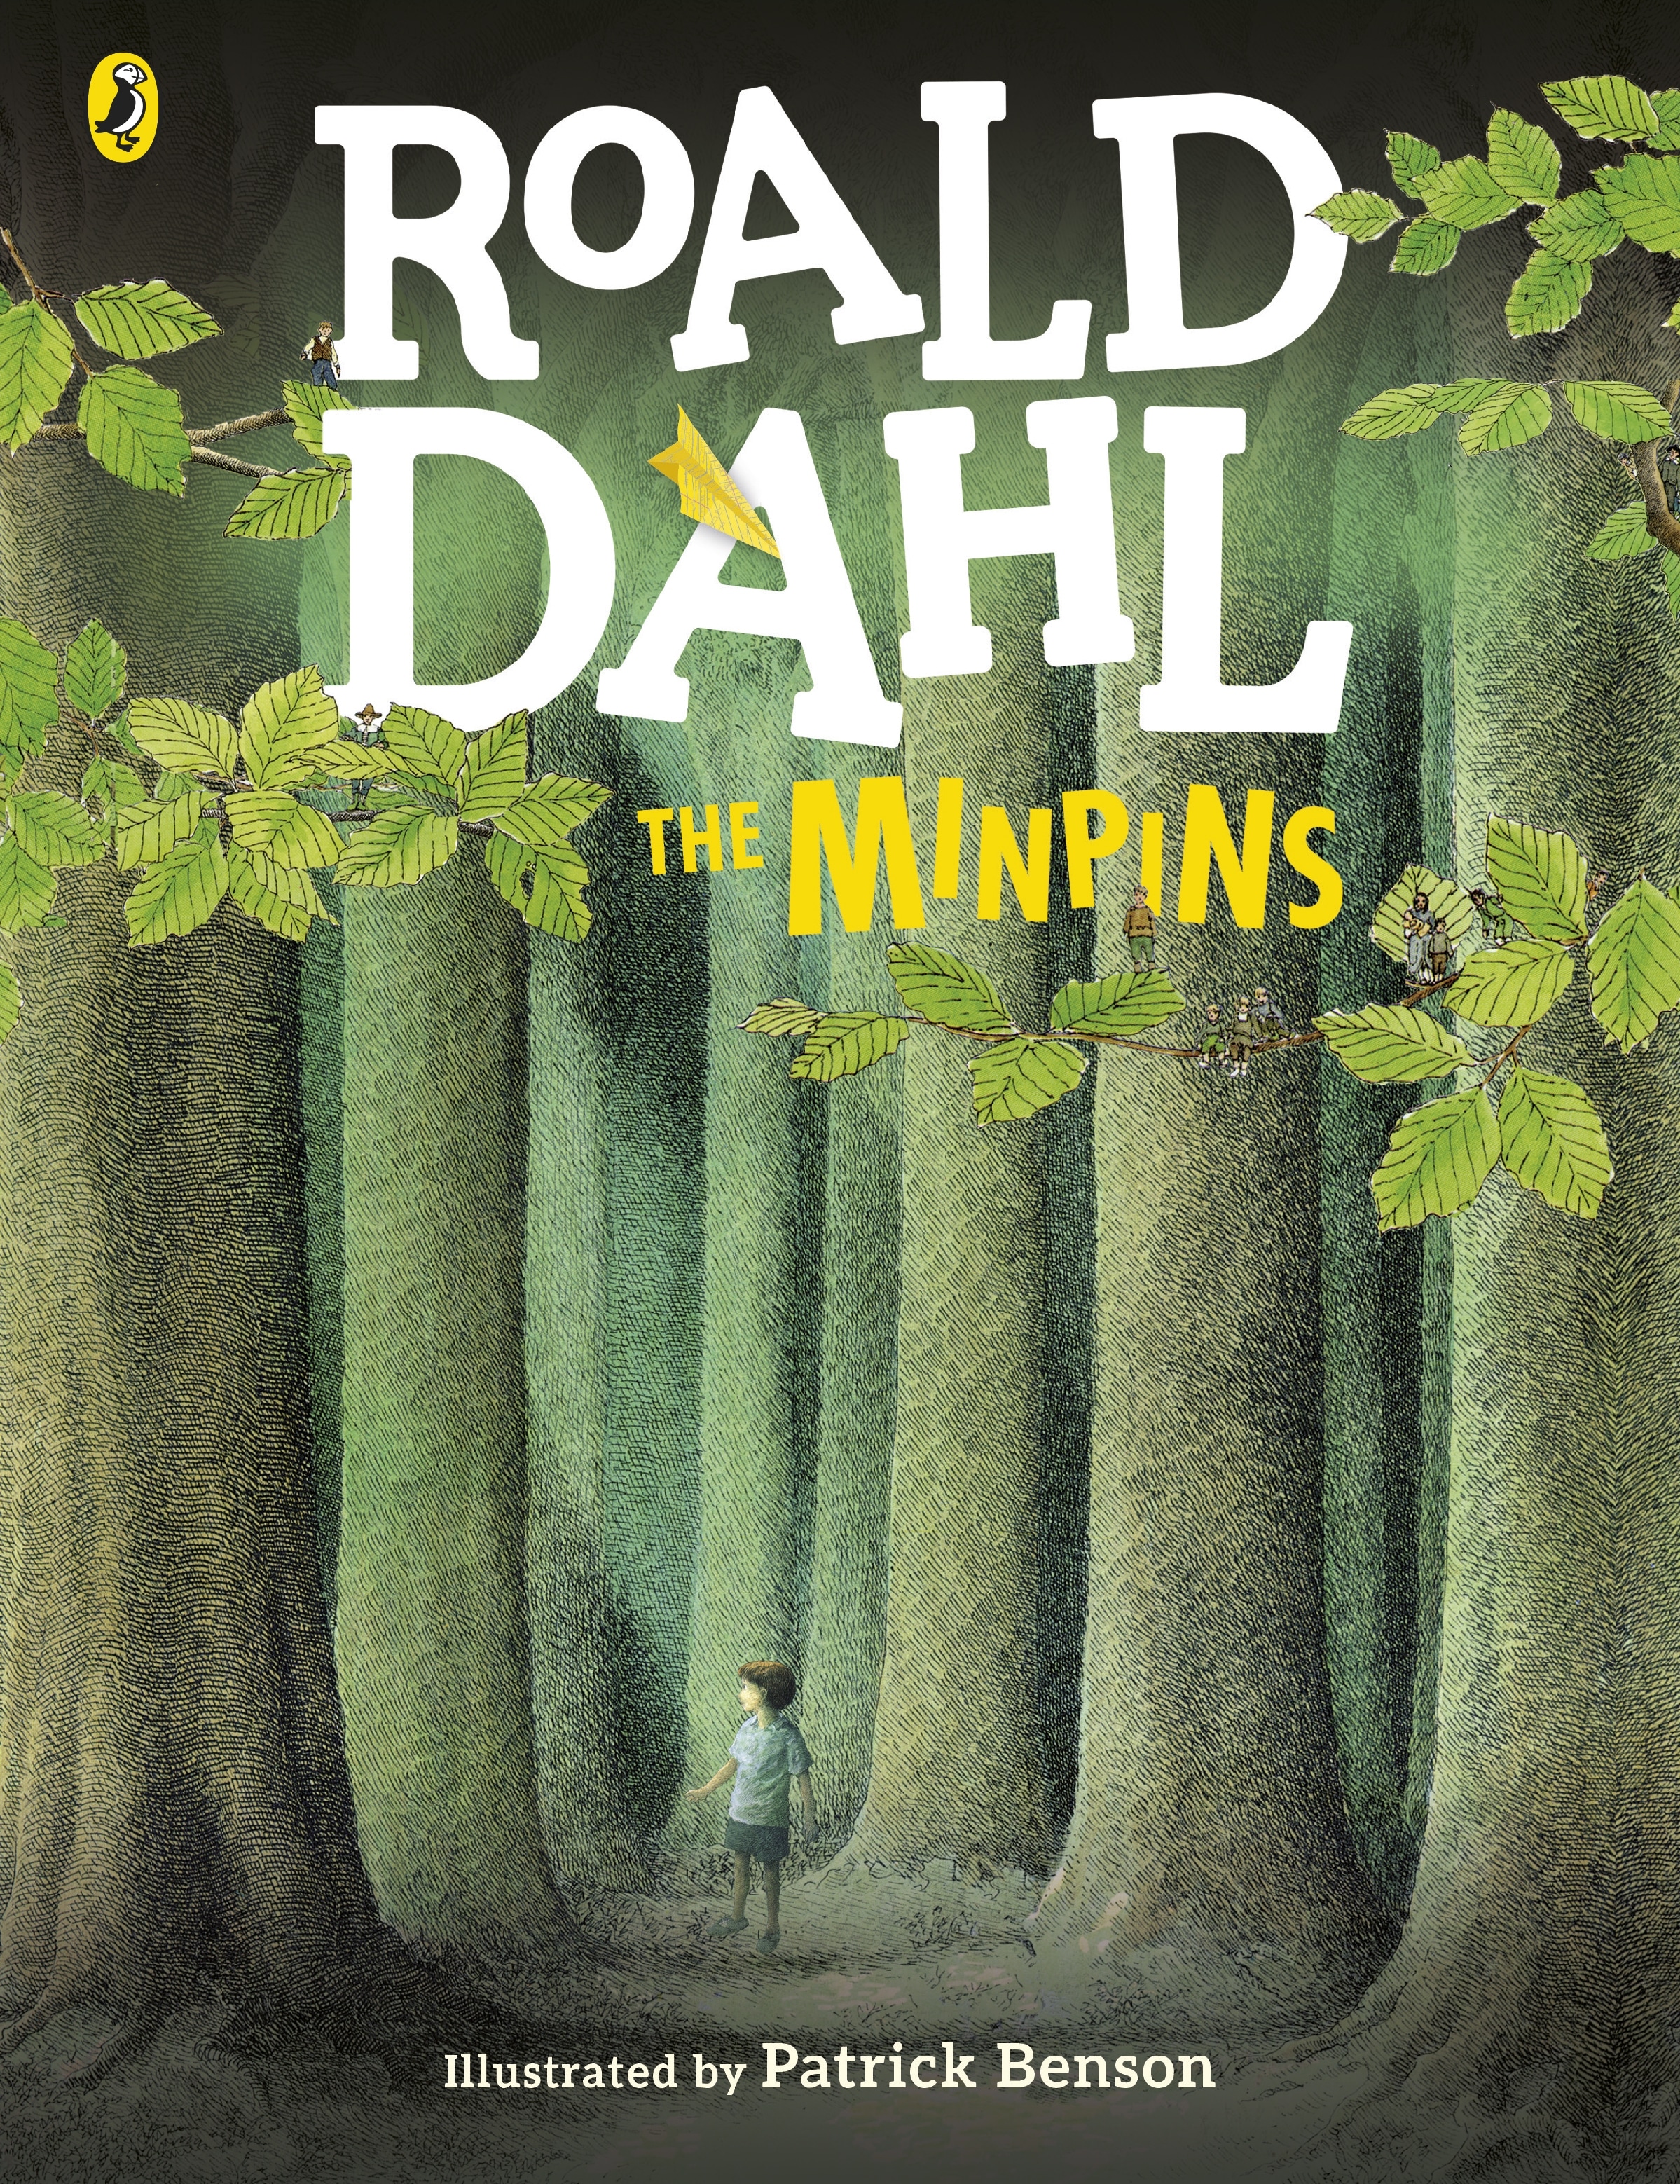 Book “The Minpins” by Roald Dahl — November 7, 2013